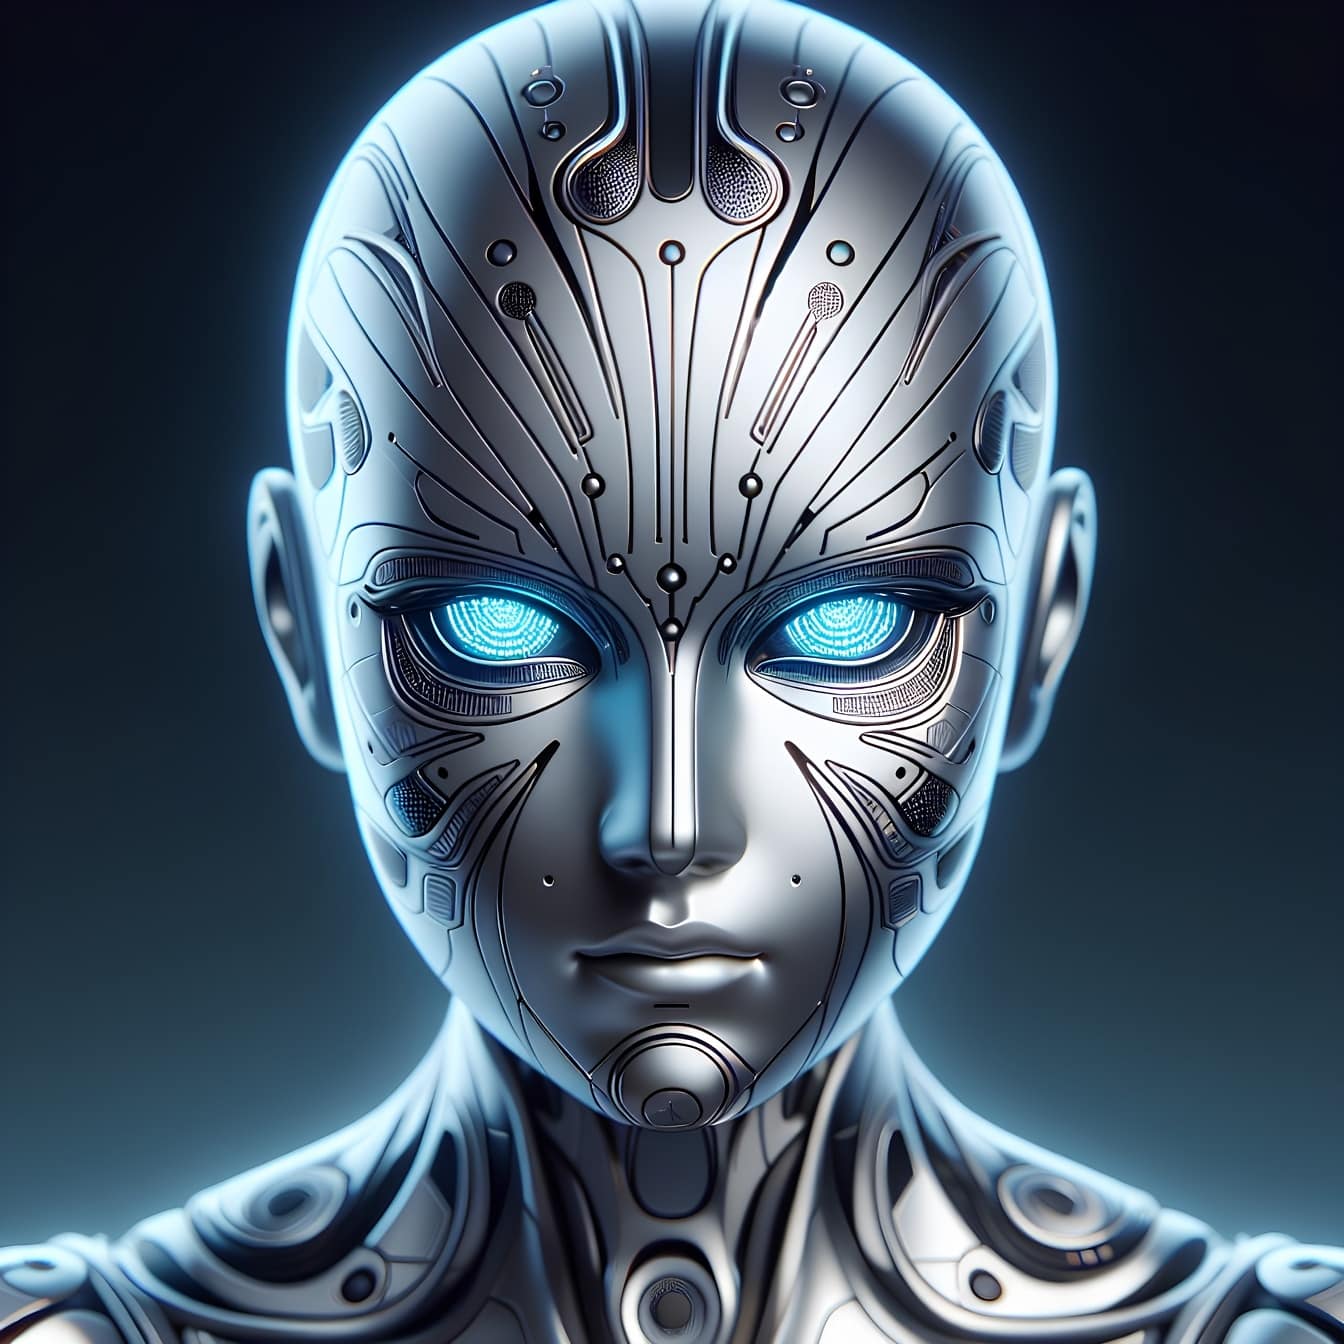 หัวของหุ่นยนต์หุ่นยนต์ไซบอร์กนอกโลกที่มีปัญญาประดิษฐ์และดวงตาเรืองแสง